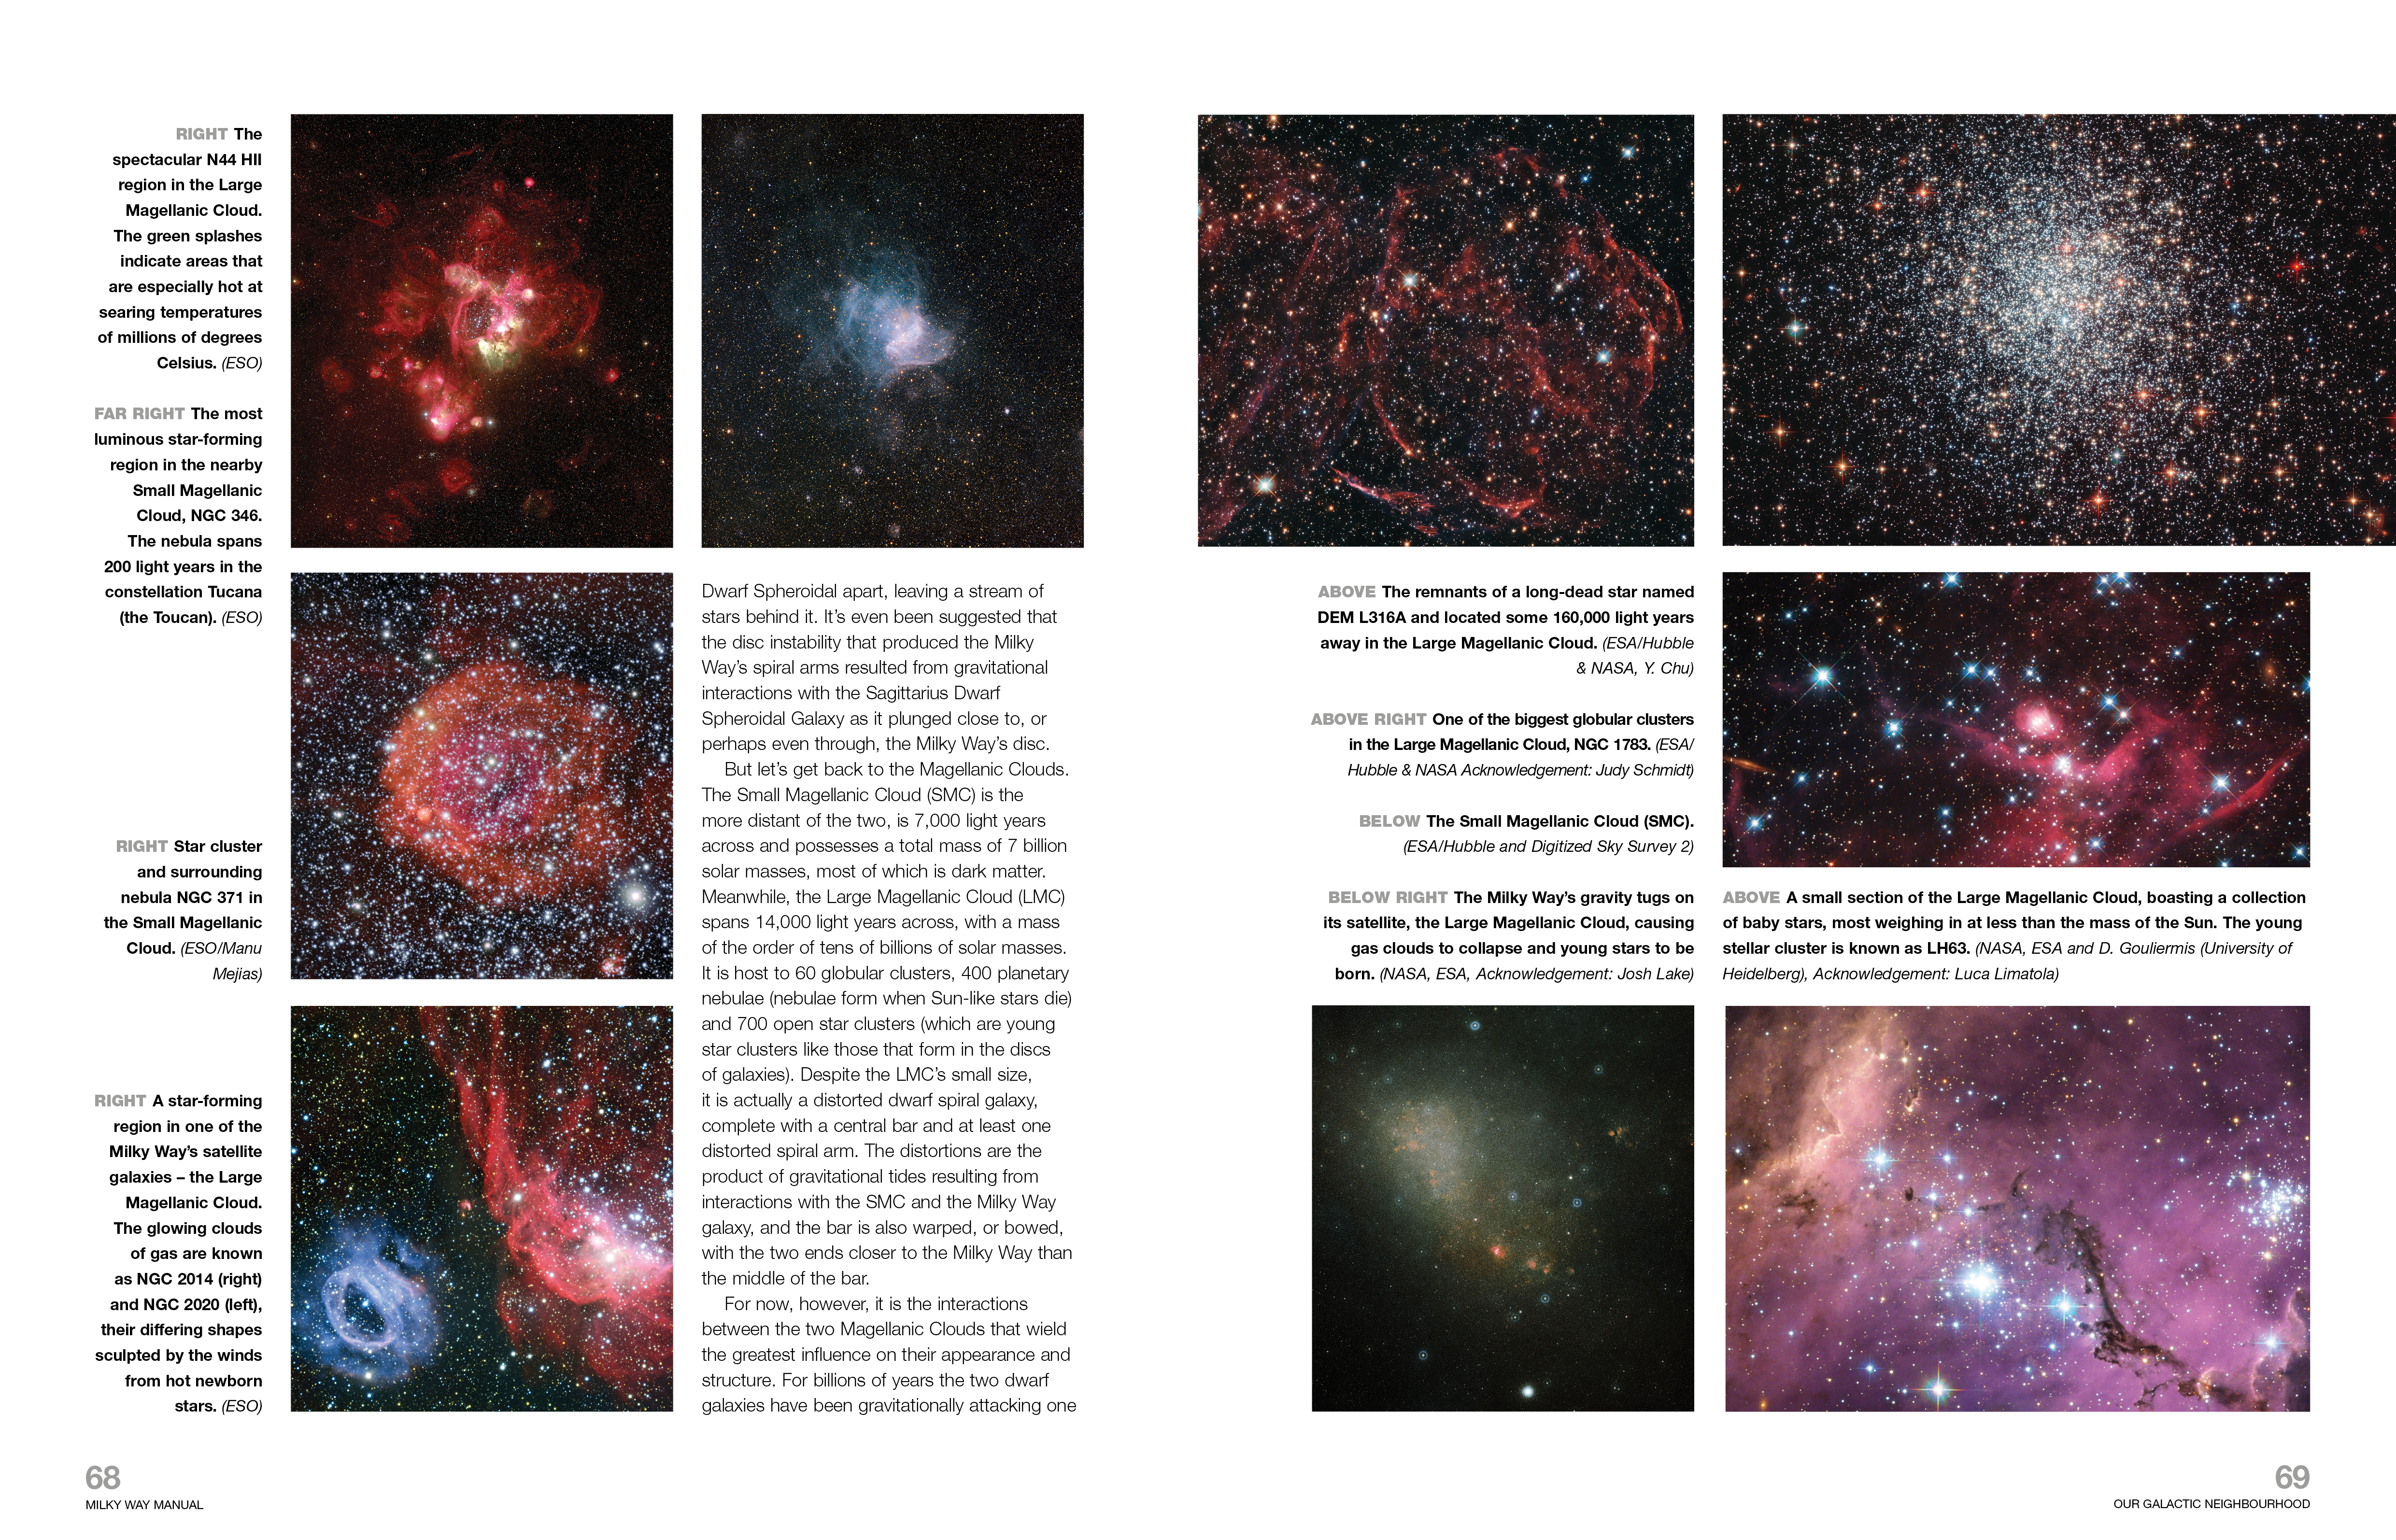 Milky Way Owners' Workshop Manual